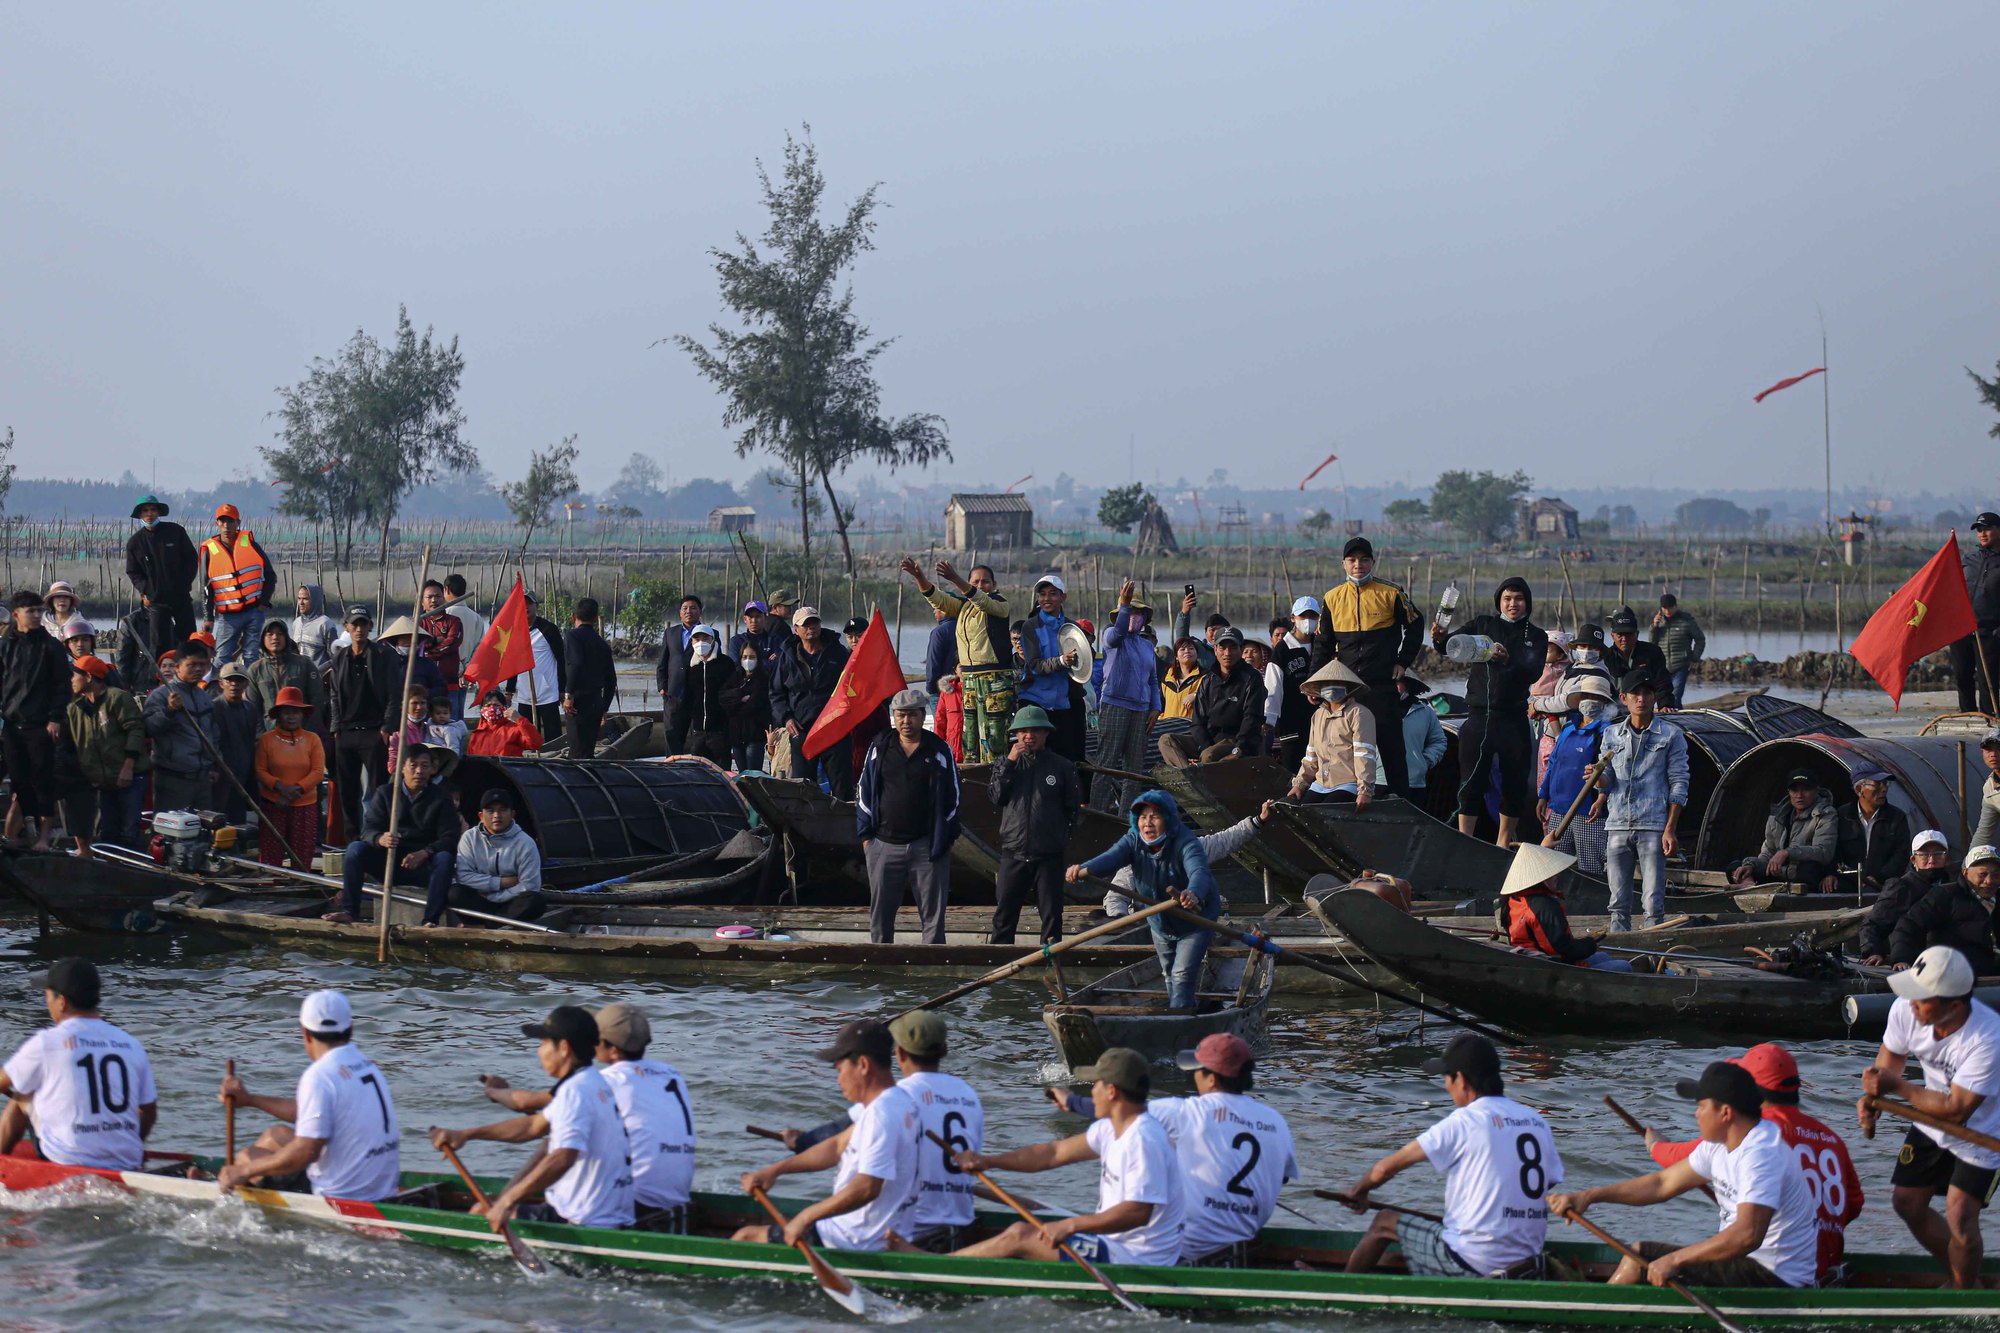 'Chen chân' dự lễ cầu ngư lớn nhất cố đô Huế - Ảnh 10.